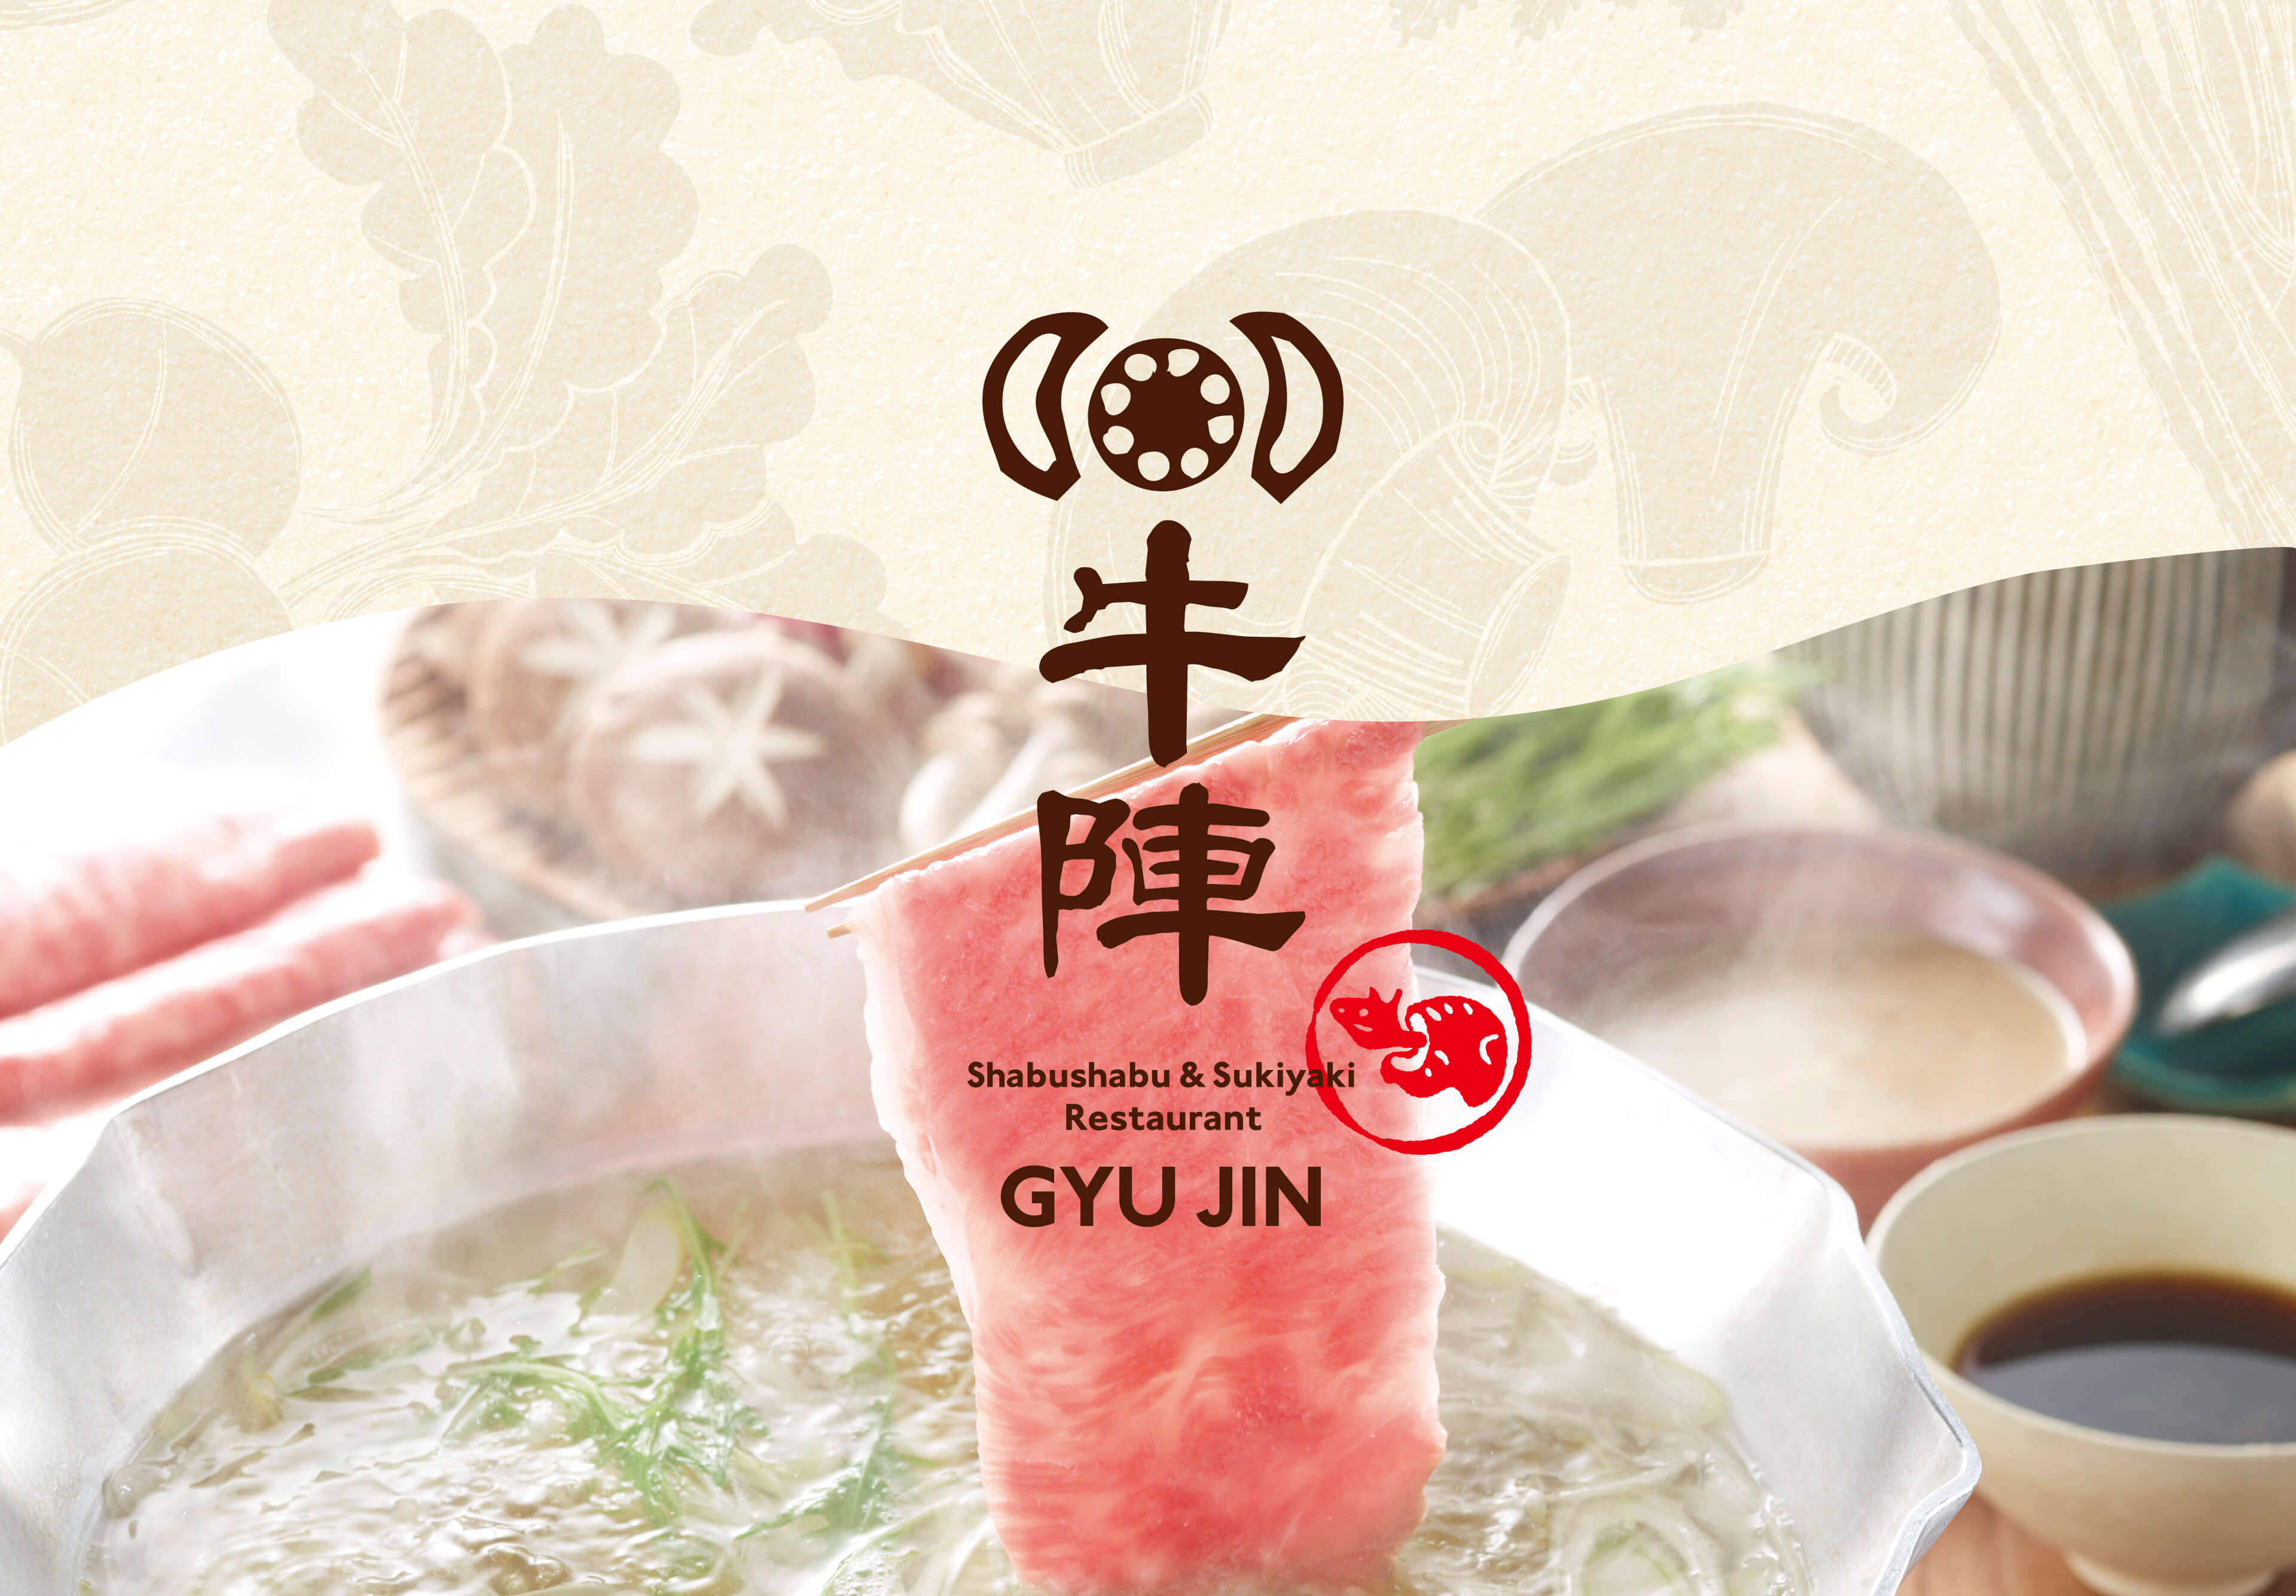 牛陣 Shabushabu & Sukiyaki Restaurant Gyujin